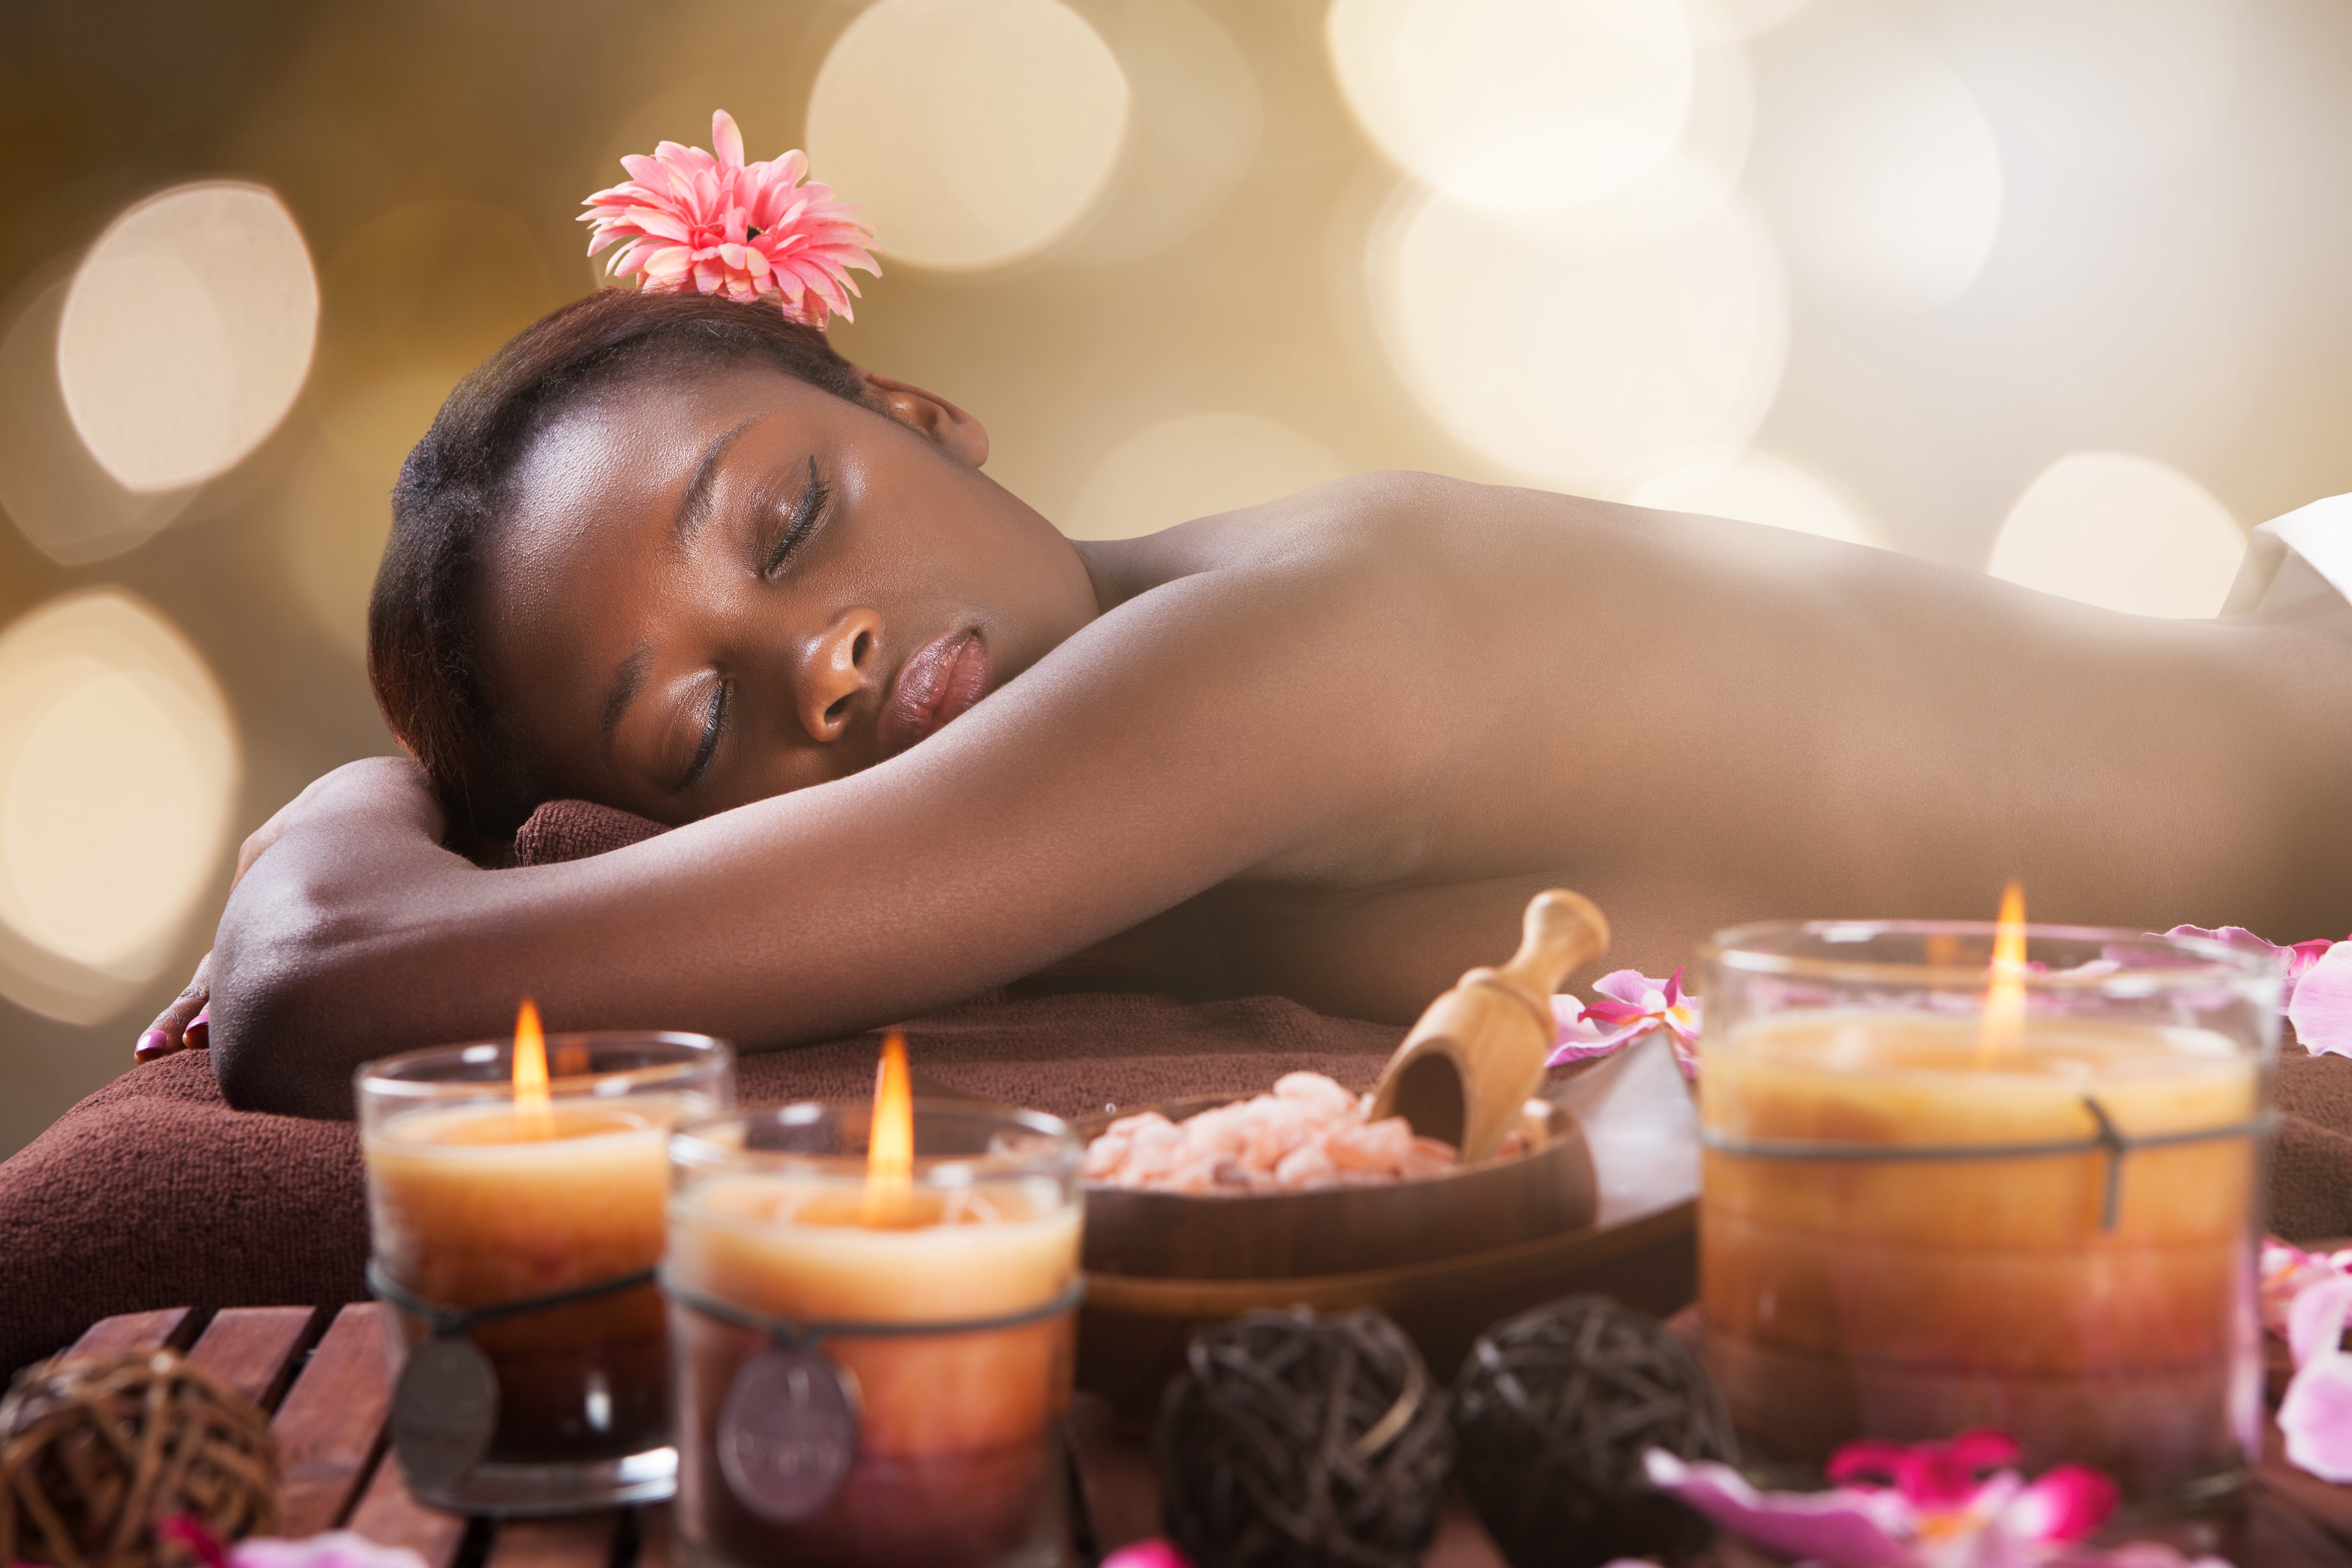 Passion Luxury Aromatherapy Massage Candle